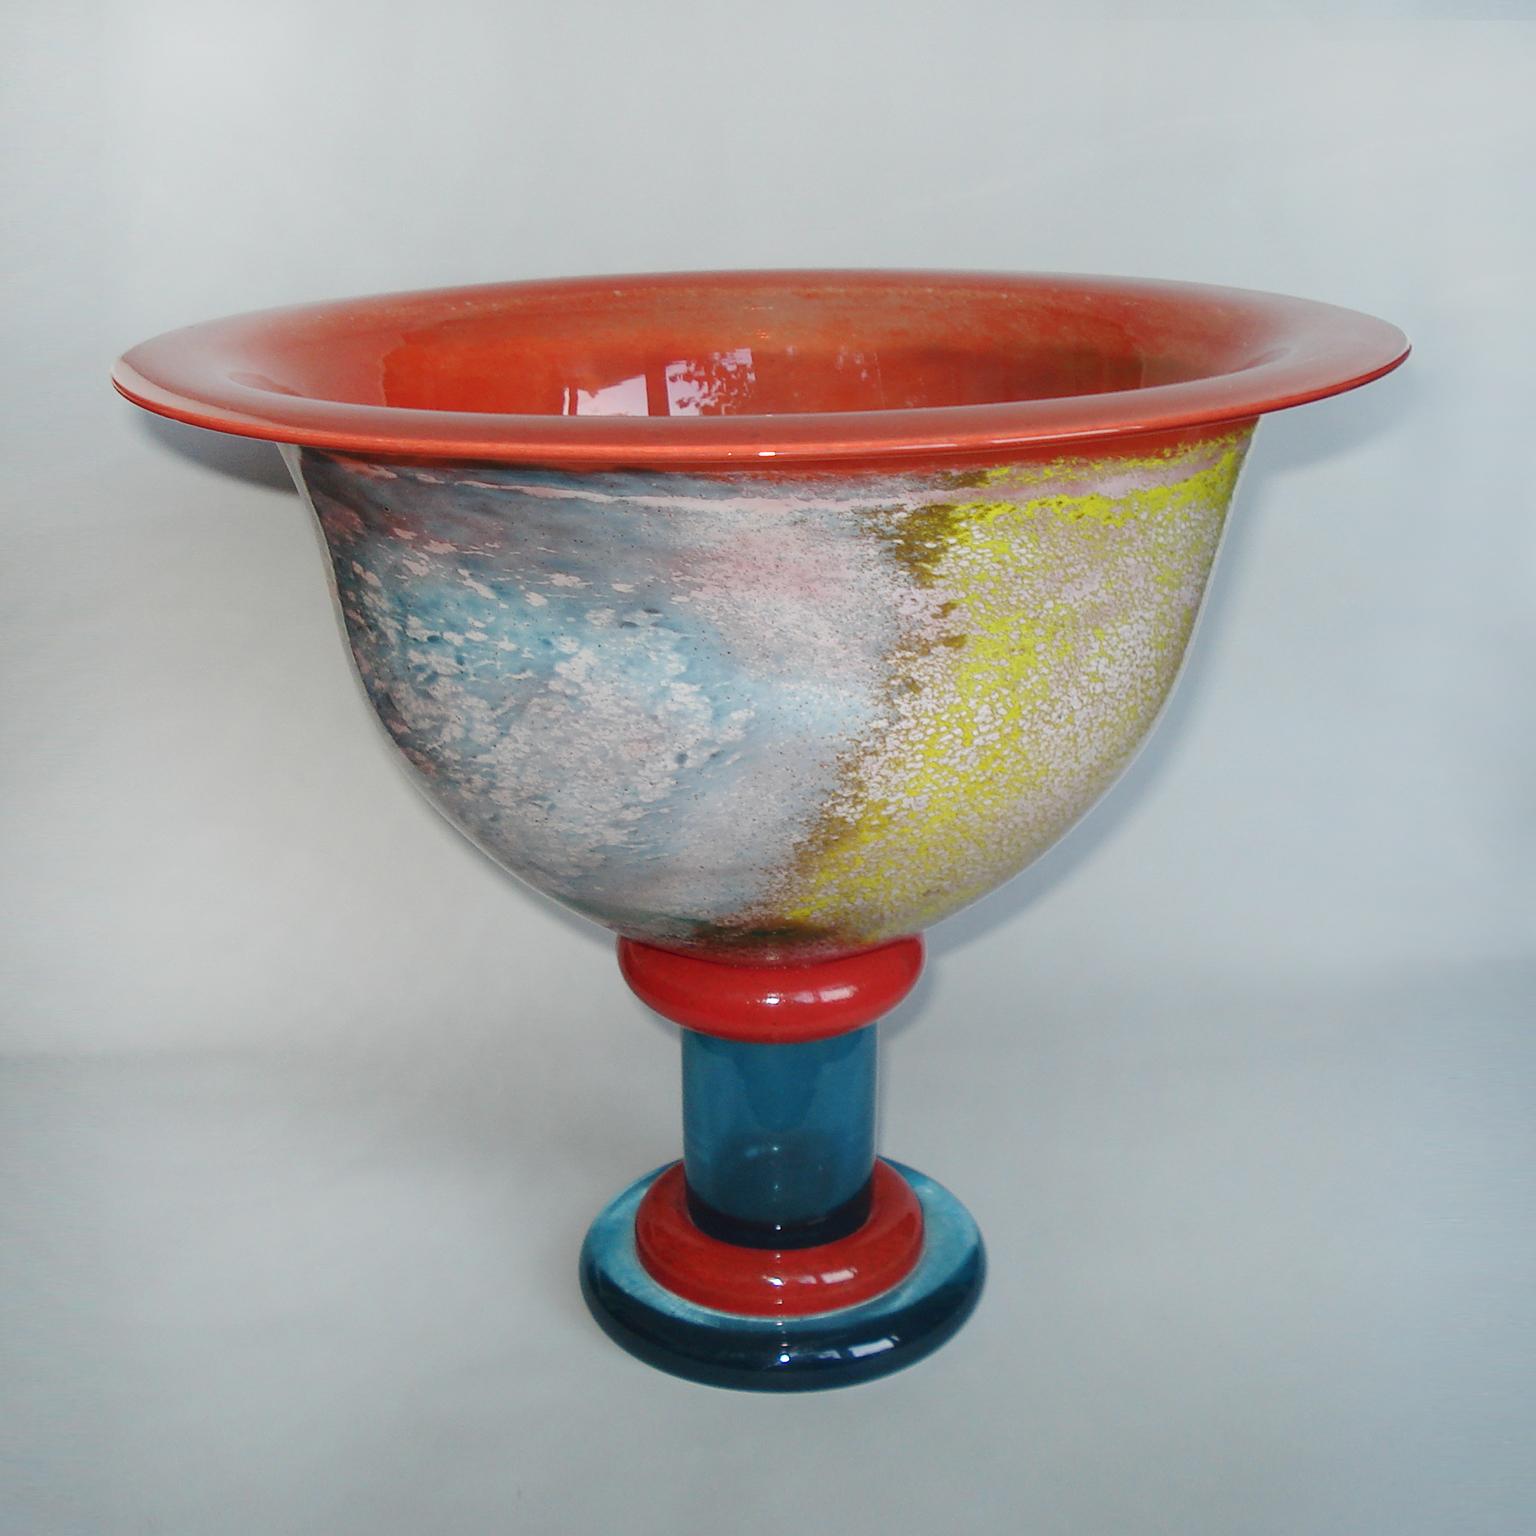 Art Glass Scandinavian Design Glass Bowl by Kjell Engman for Kosta Boda, 1980s